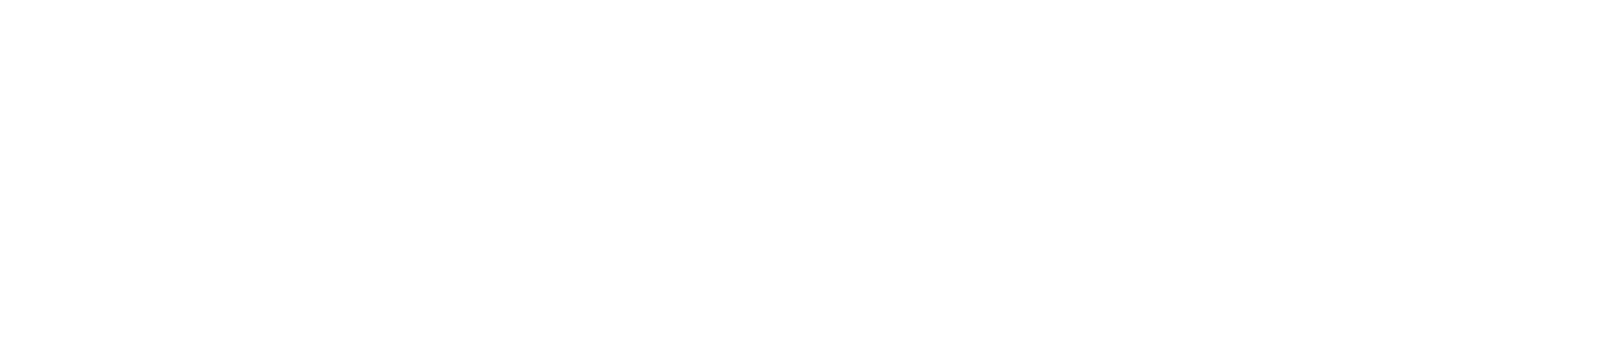 AirTAC International logo large for dark backgrounds (transparent PNG)